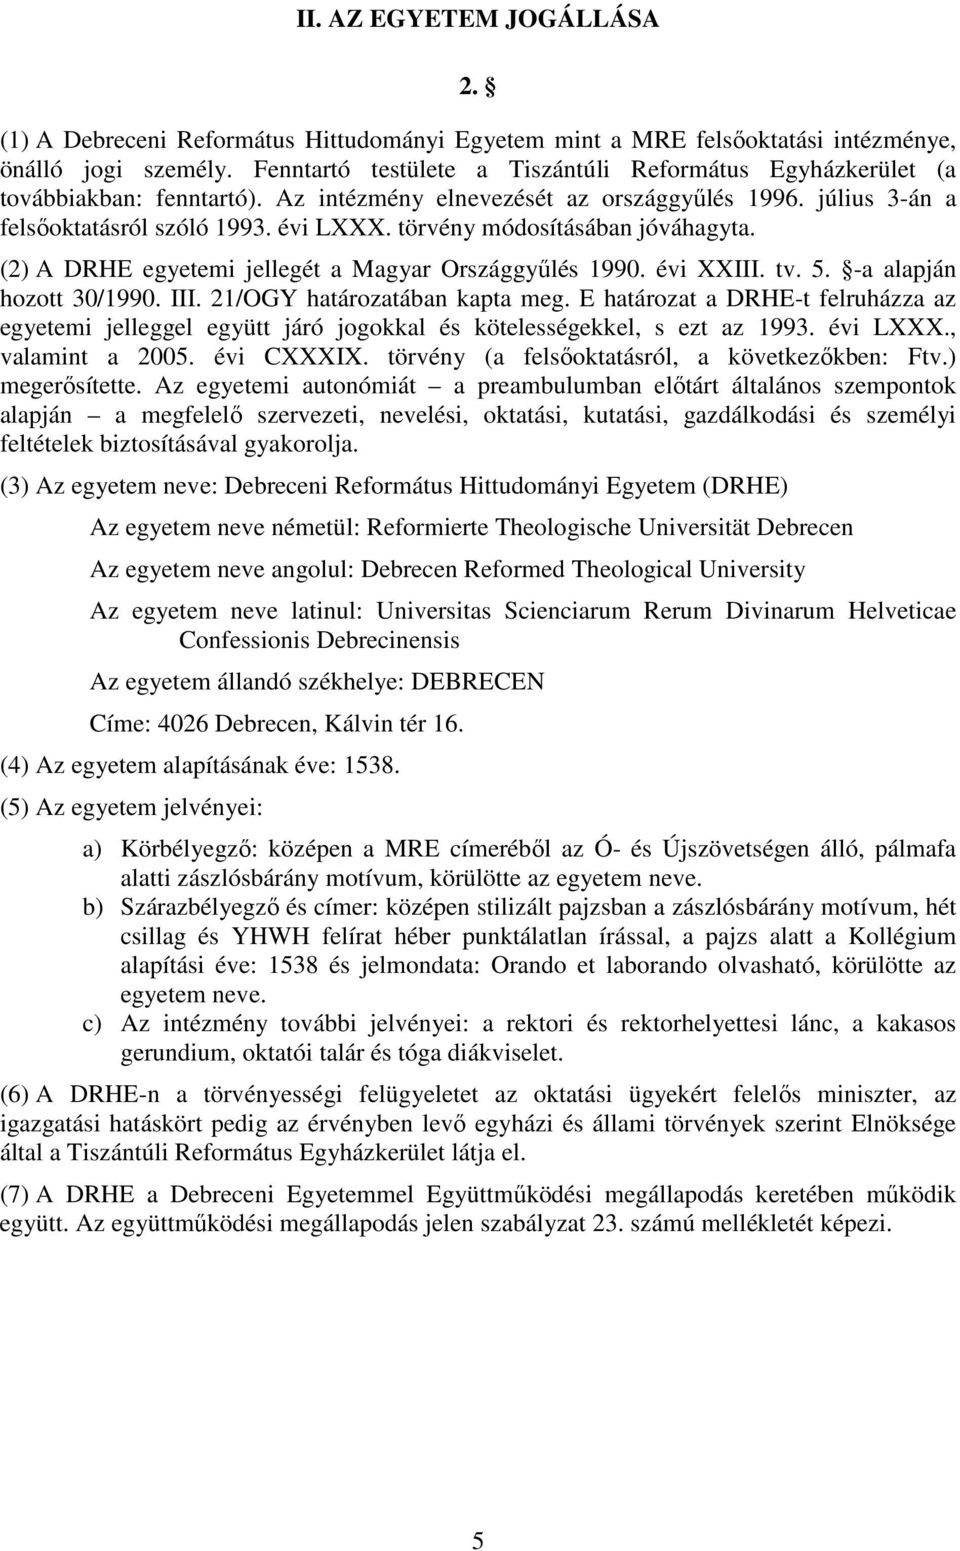 törvény módosításában jóváhagyta. (2) A DRHE egyetemi jellegét a Magyar Országgyűlés 1990. évi XXIII. tv. 5. -a alapján hozott 30/1990. III. 21/OGY határozatában kapta meg.